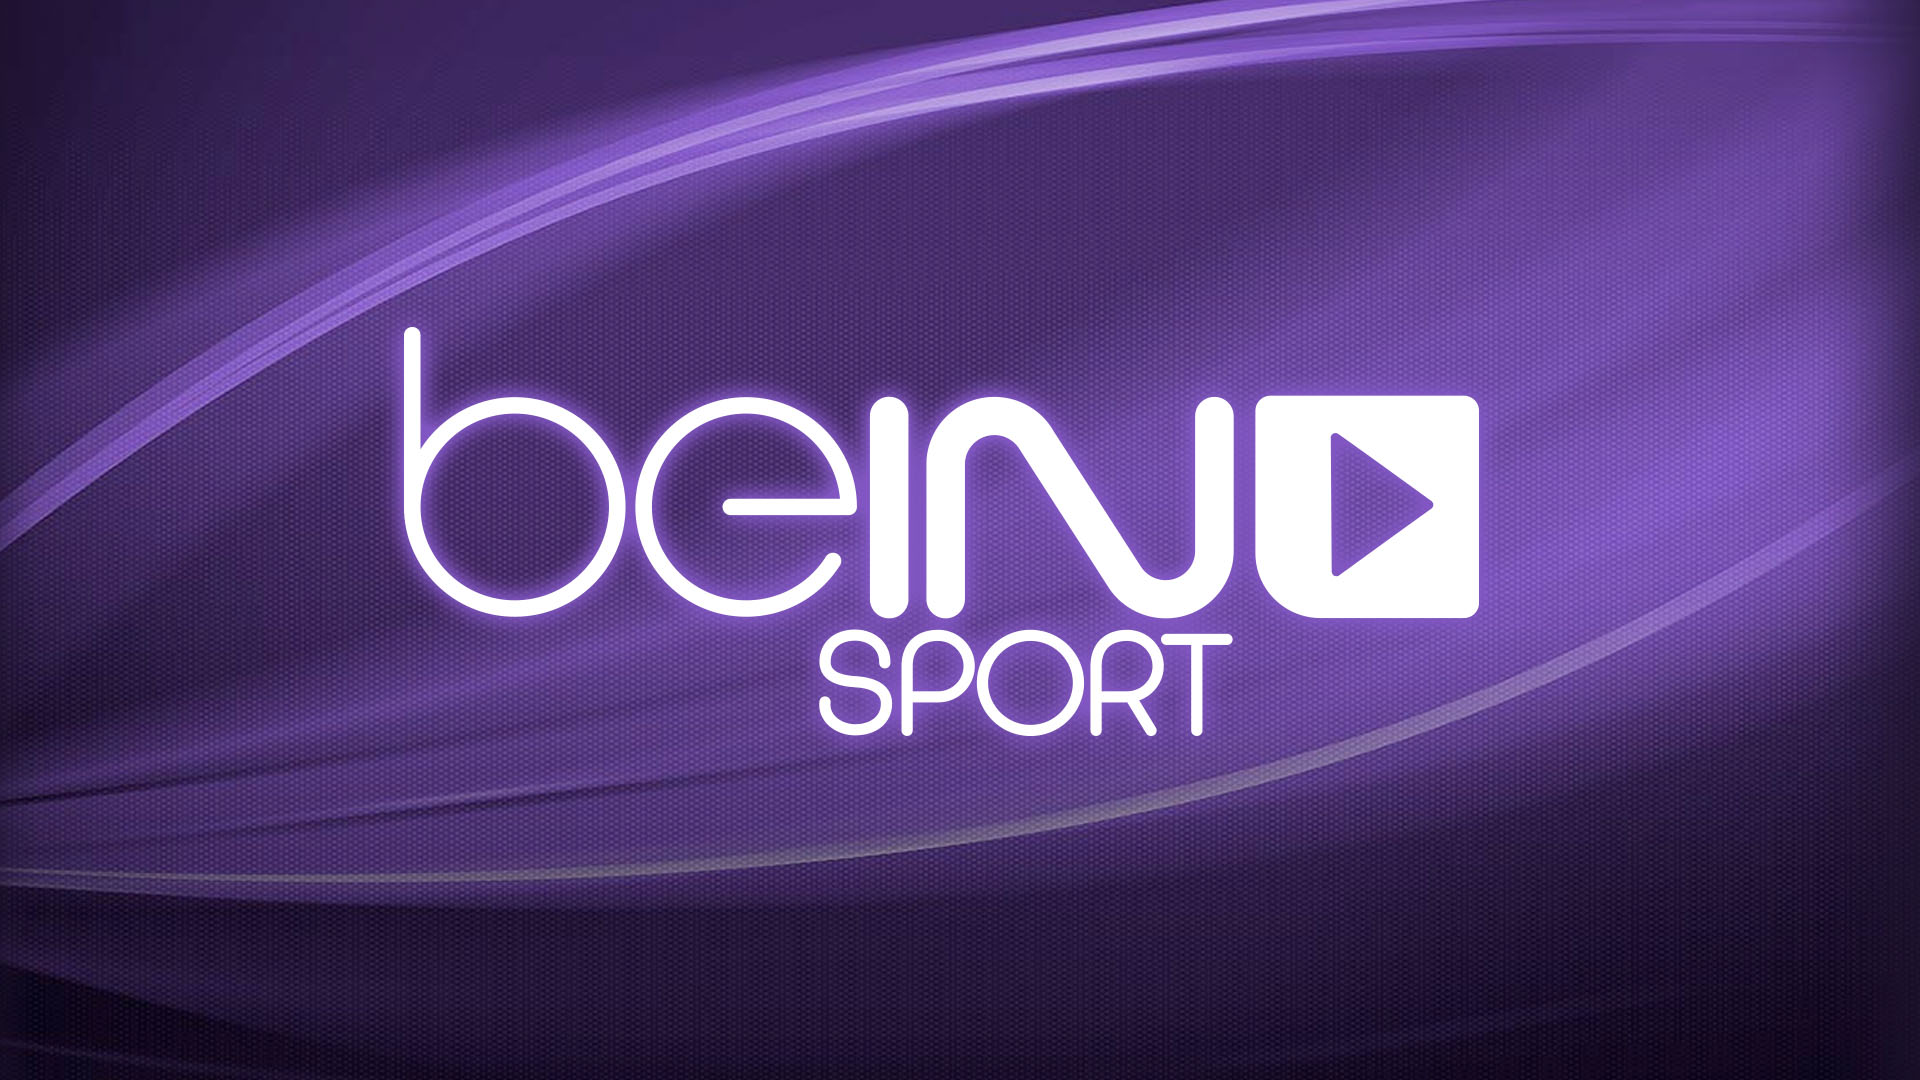 تردد قناة bein sport الإخبارية المفتوحة لمتابعة أقوى المباريات الرياضية بجودة ودقة عالية